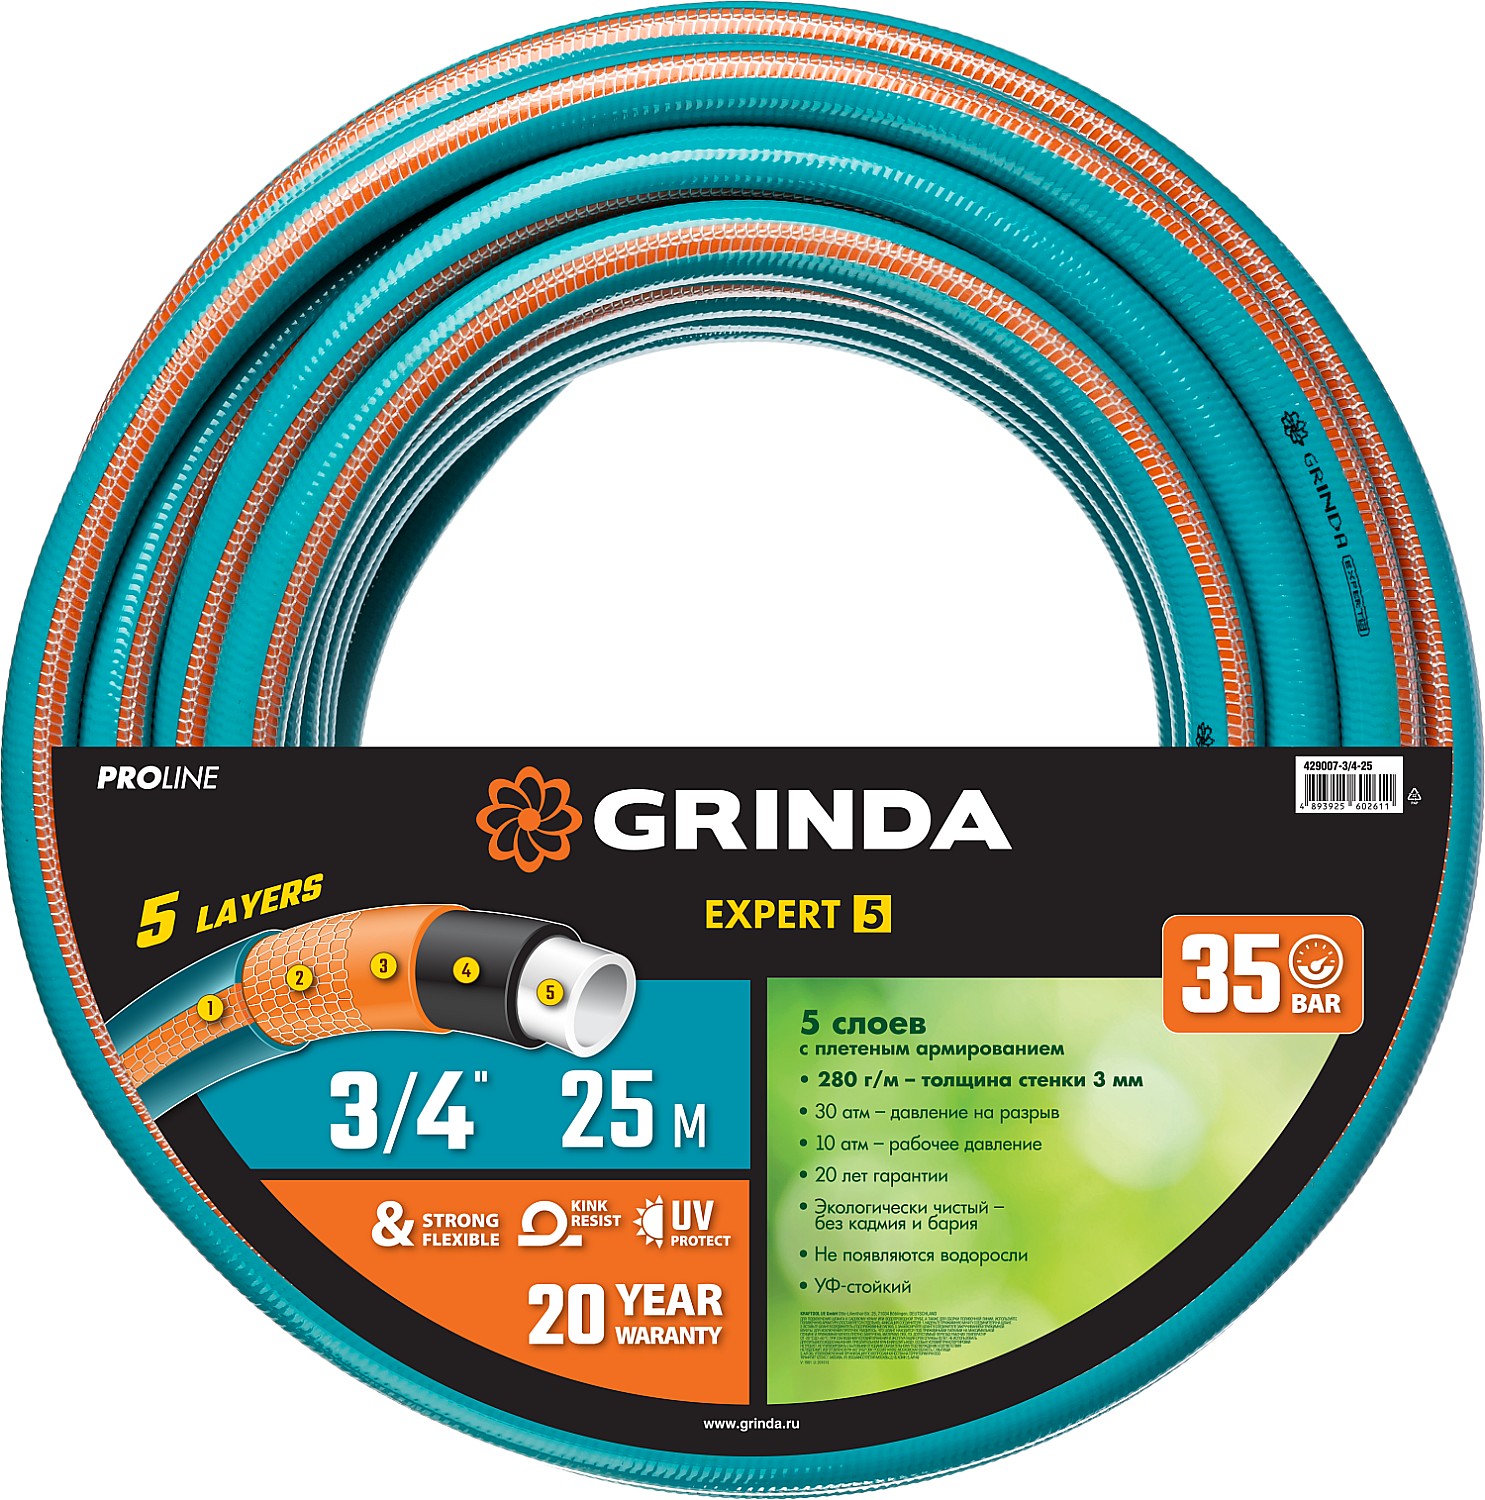 Шланг для полива Grinda Proline expert 429007-3/4-25 3/4 25 м - купить в ООО «Ситистройресурс», цена на Мегамаркет